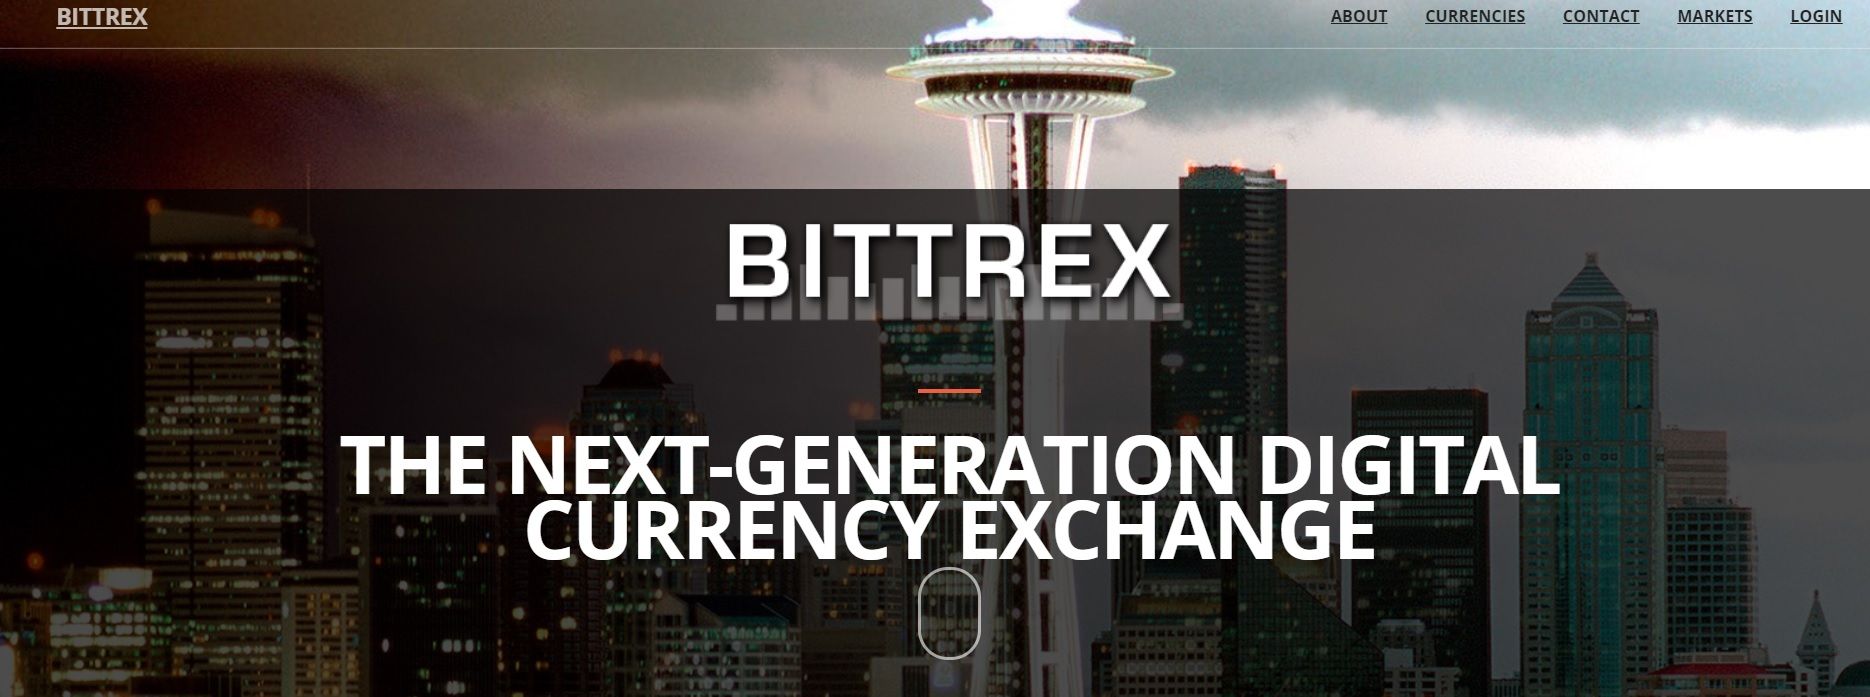 Làm quen với sàn giao dịch cryptocurrency - Bittrex